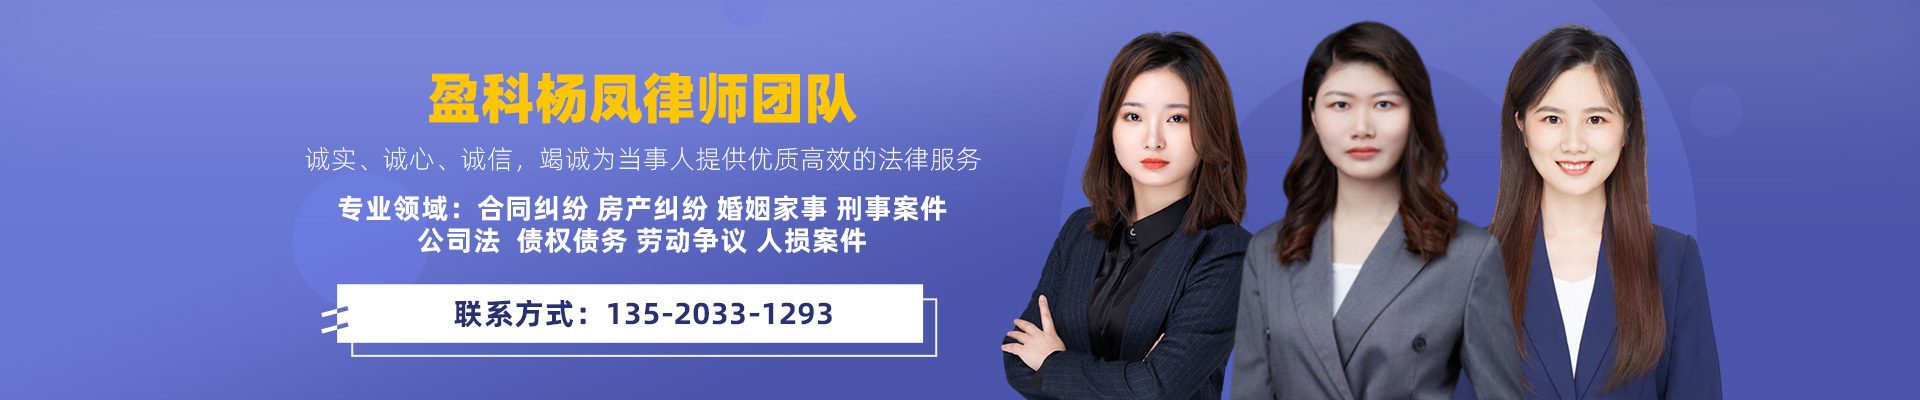 杨凤的律师团队网站